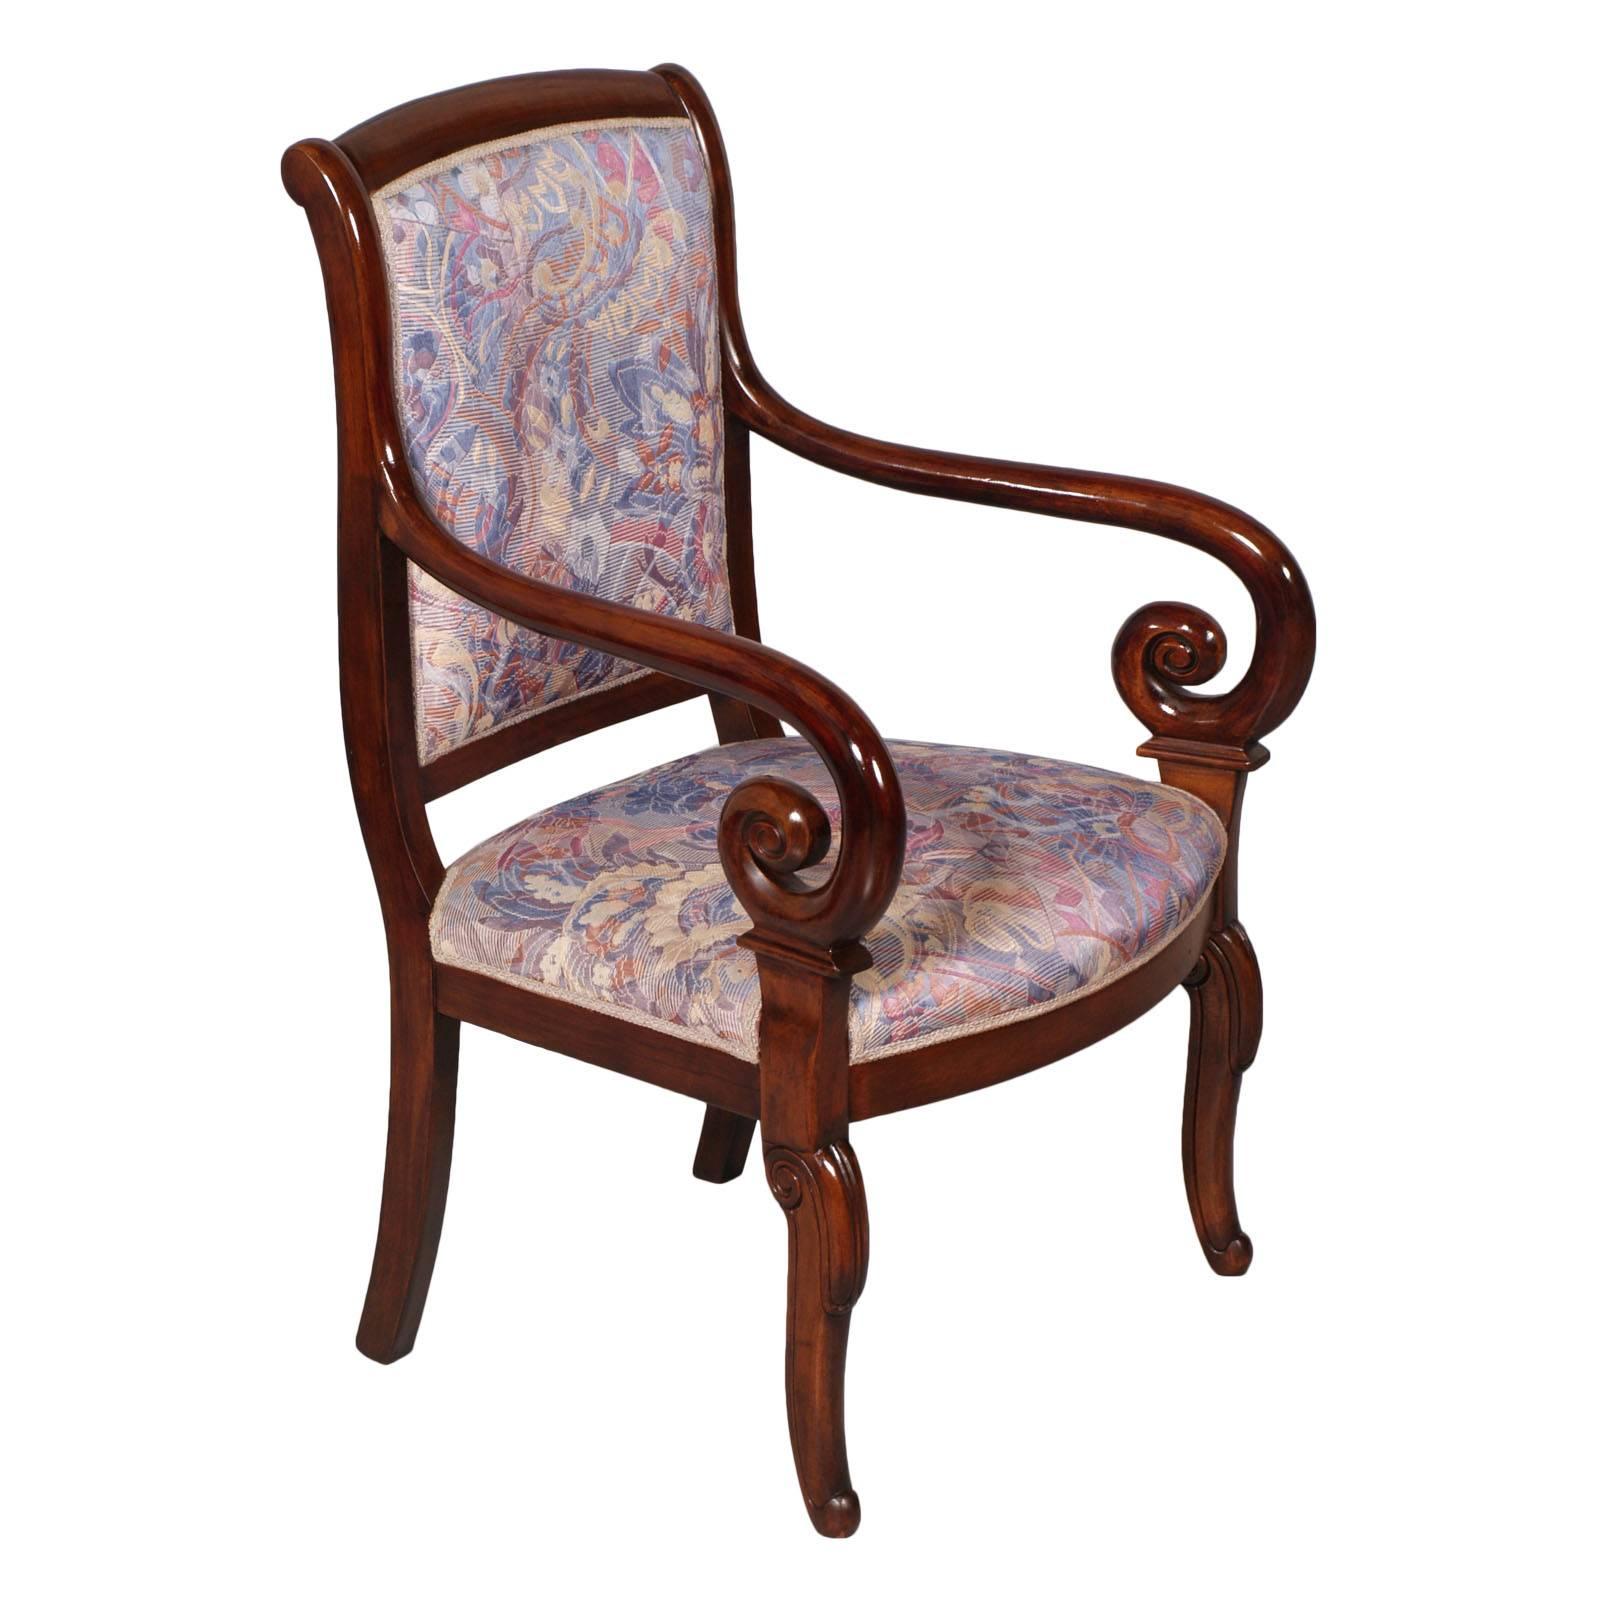 Sessel im französischen Empire-Stil des späten 19. Jahrhunderts, aus geschnitztem massivem Mahagoni